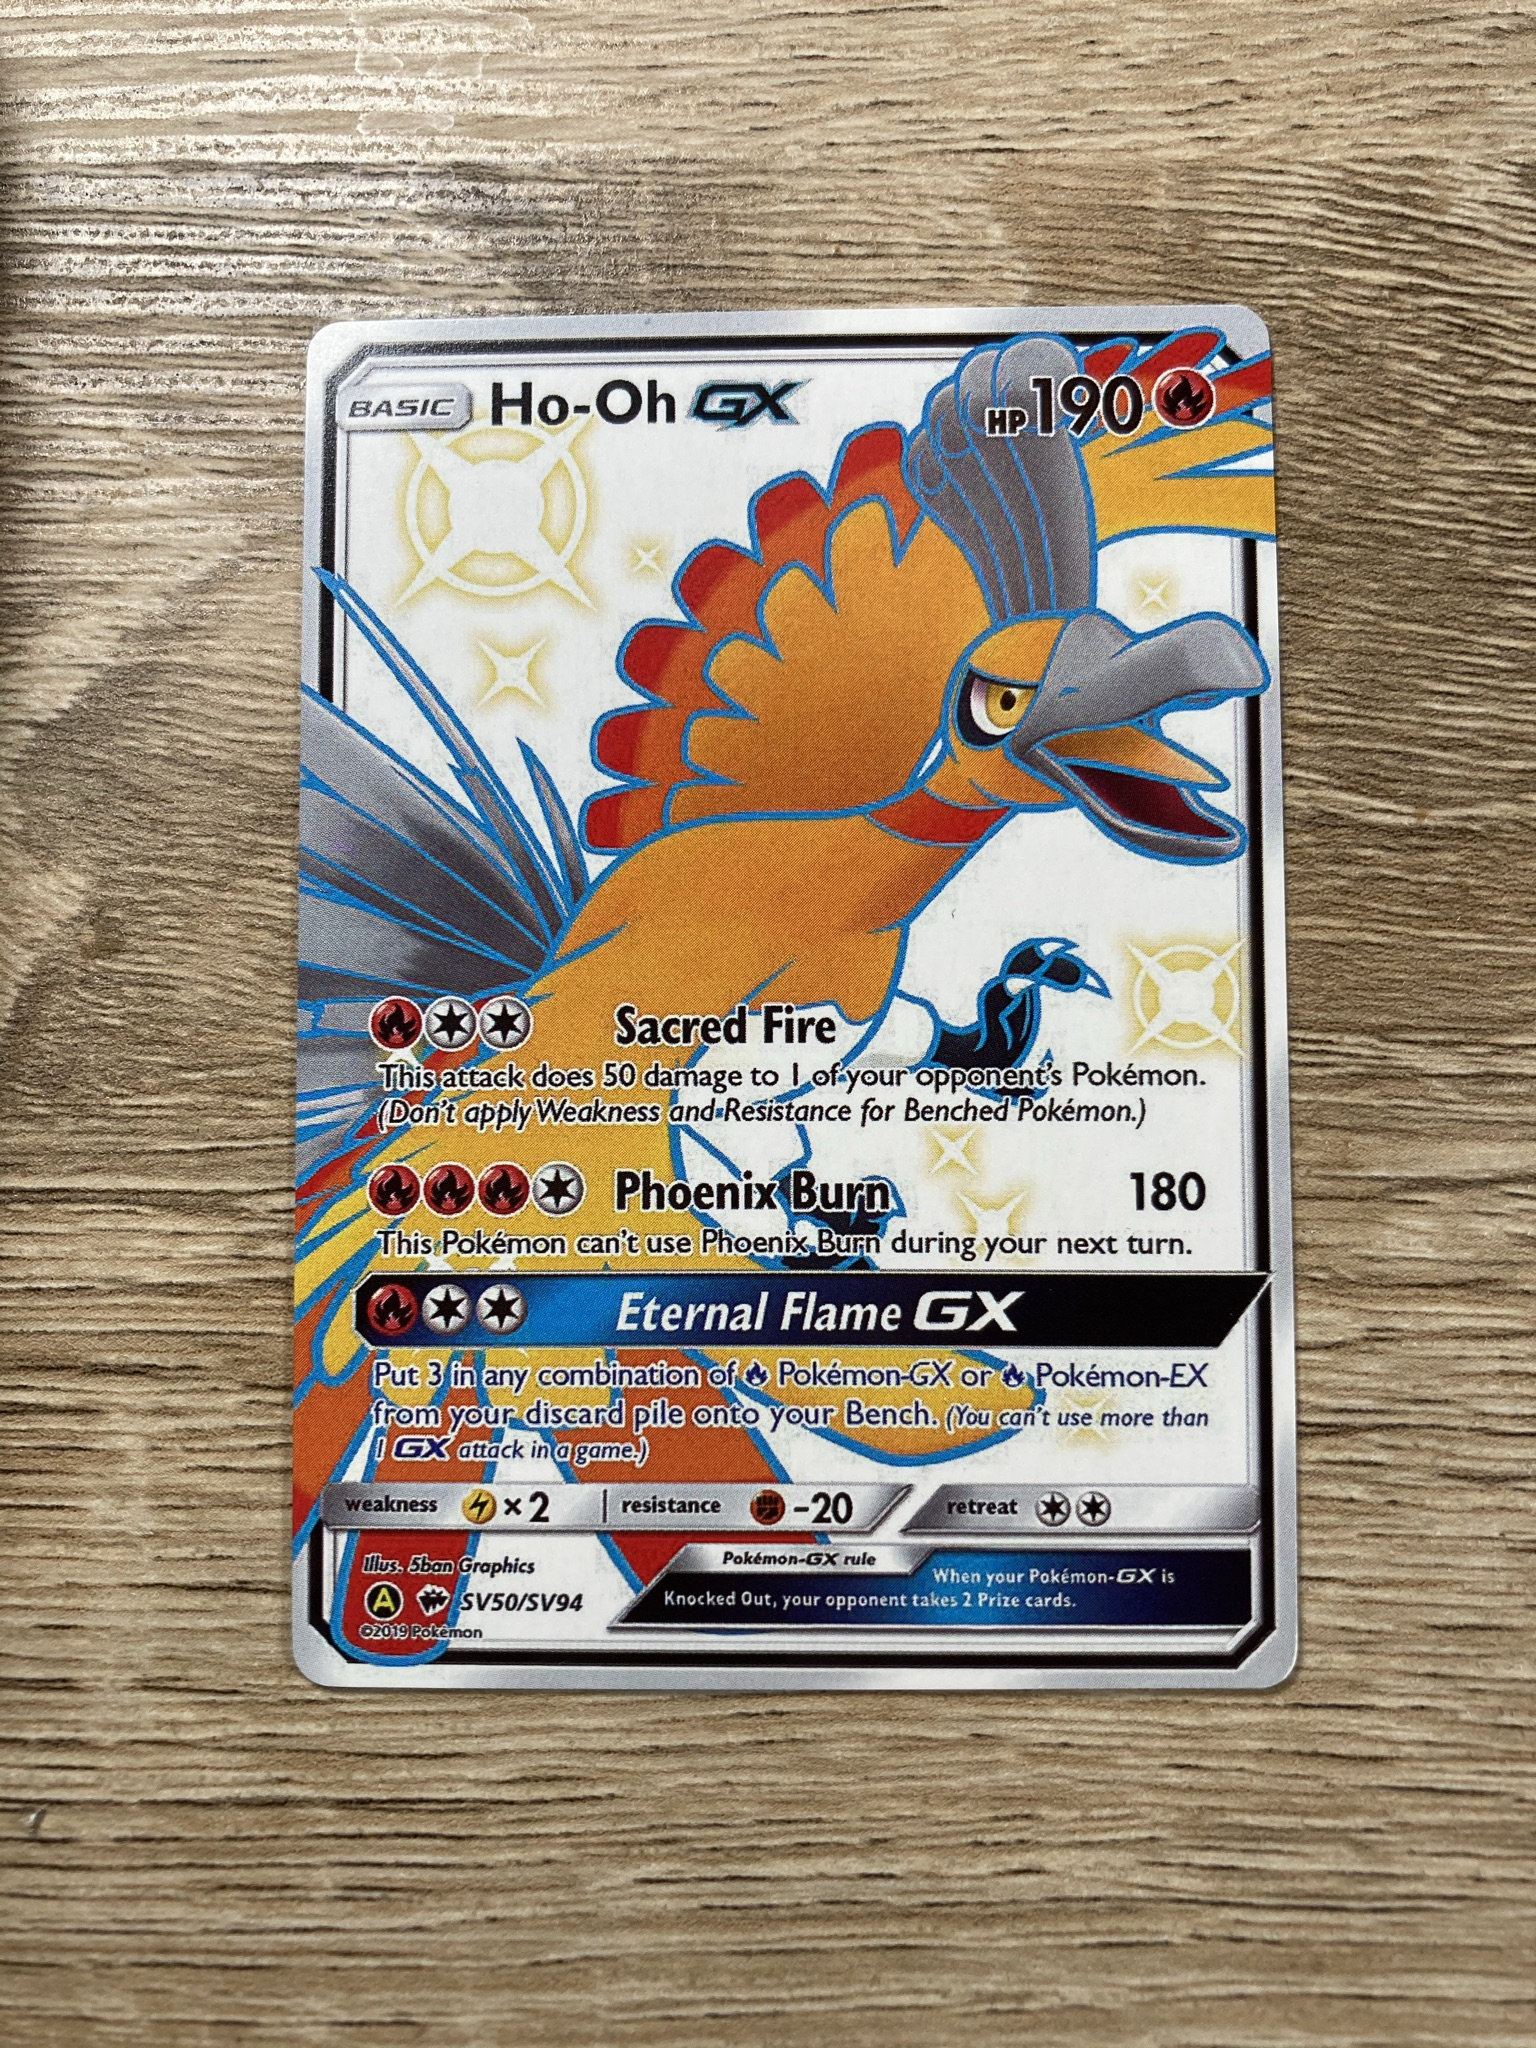 Pokemon Ho-oh Hooh Ho Oh GX Custom Full Art Metal Pokemon Card